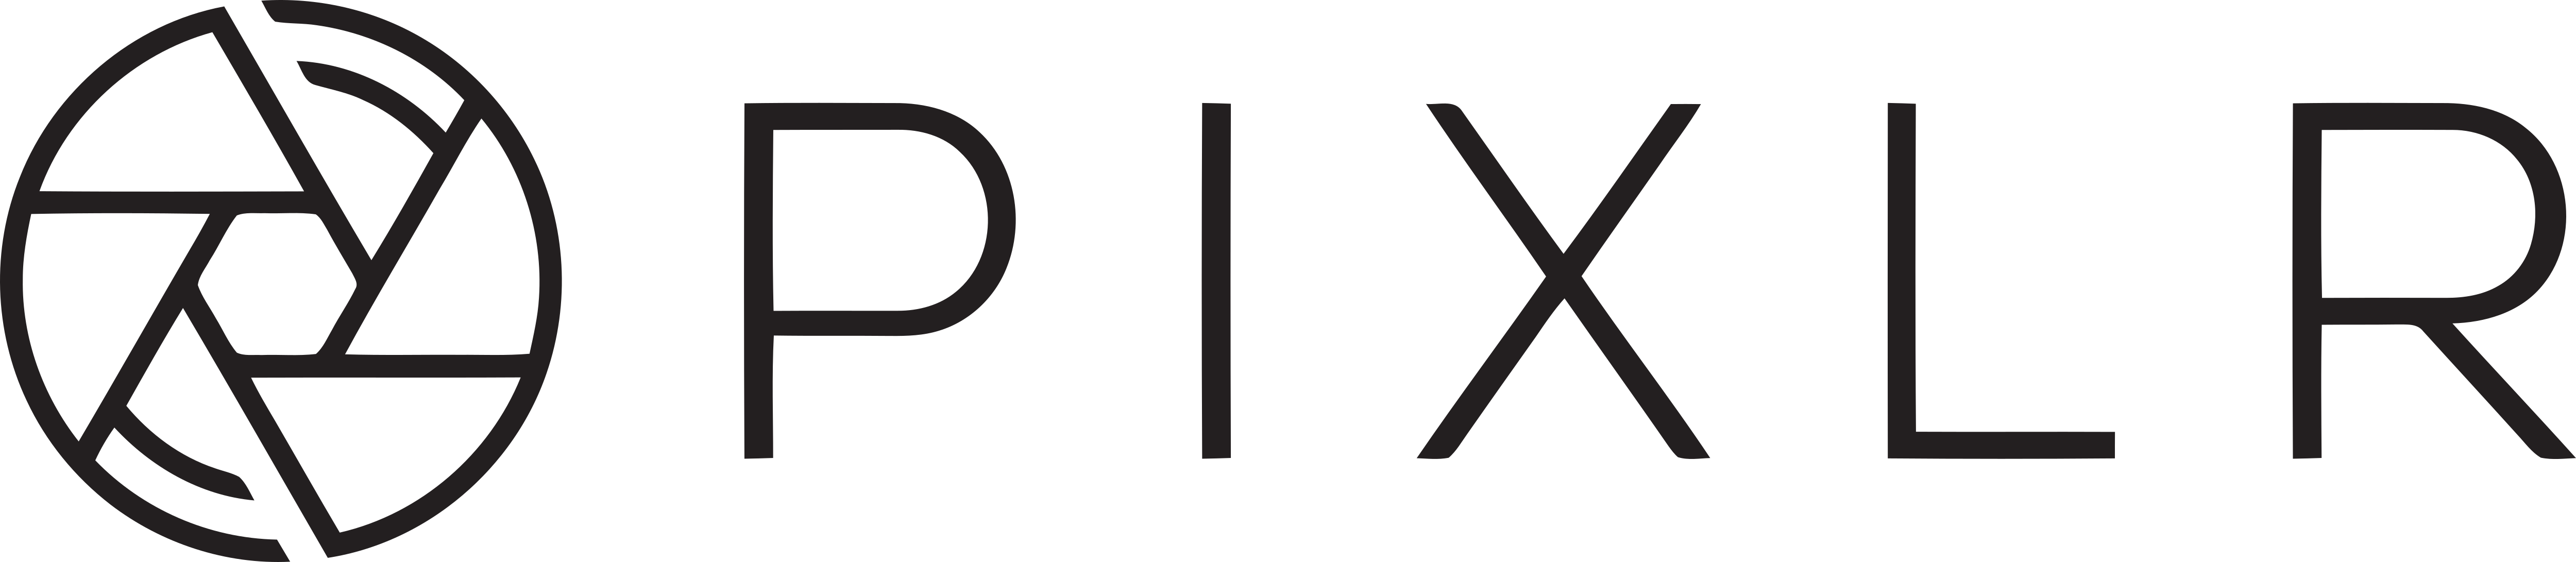  Pixlr  Logos  Download